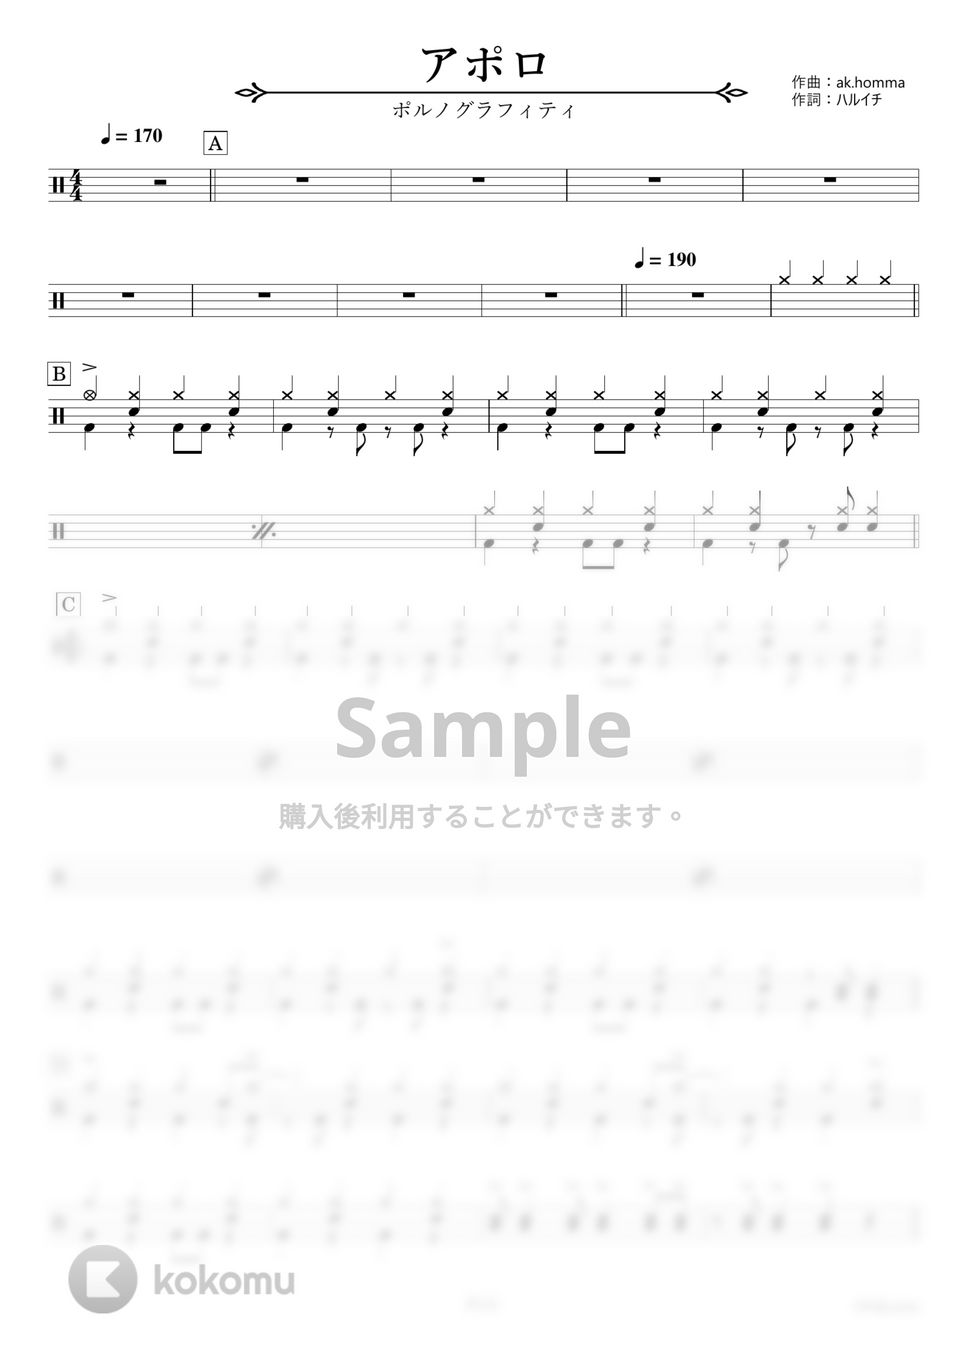 ポルノグラフィティ - アポロ【ドラム楽譜】 by HYdrums